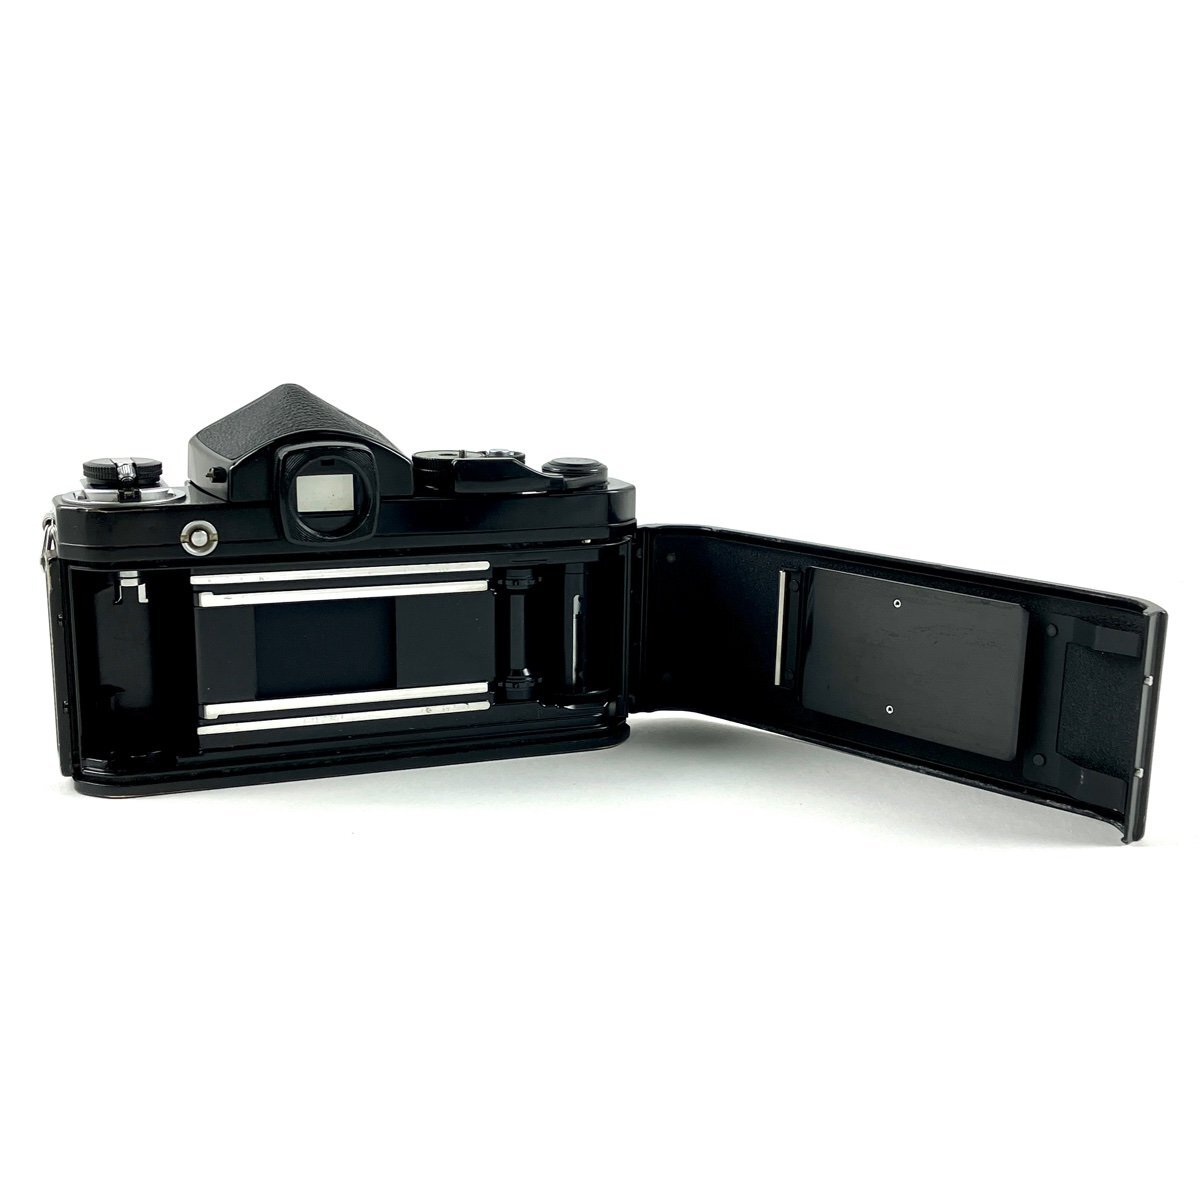 ニコン Nikon F2 アイレベル ブラック + NIKKOR 50mm F1.4 非Ai フィルム マニュアルフォーカス 一眼レフカメラ 【中古】_バイセル 31056_3